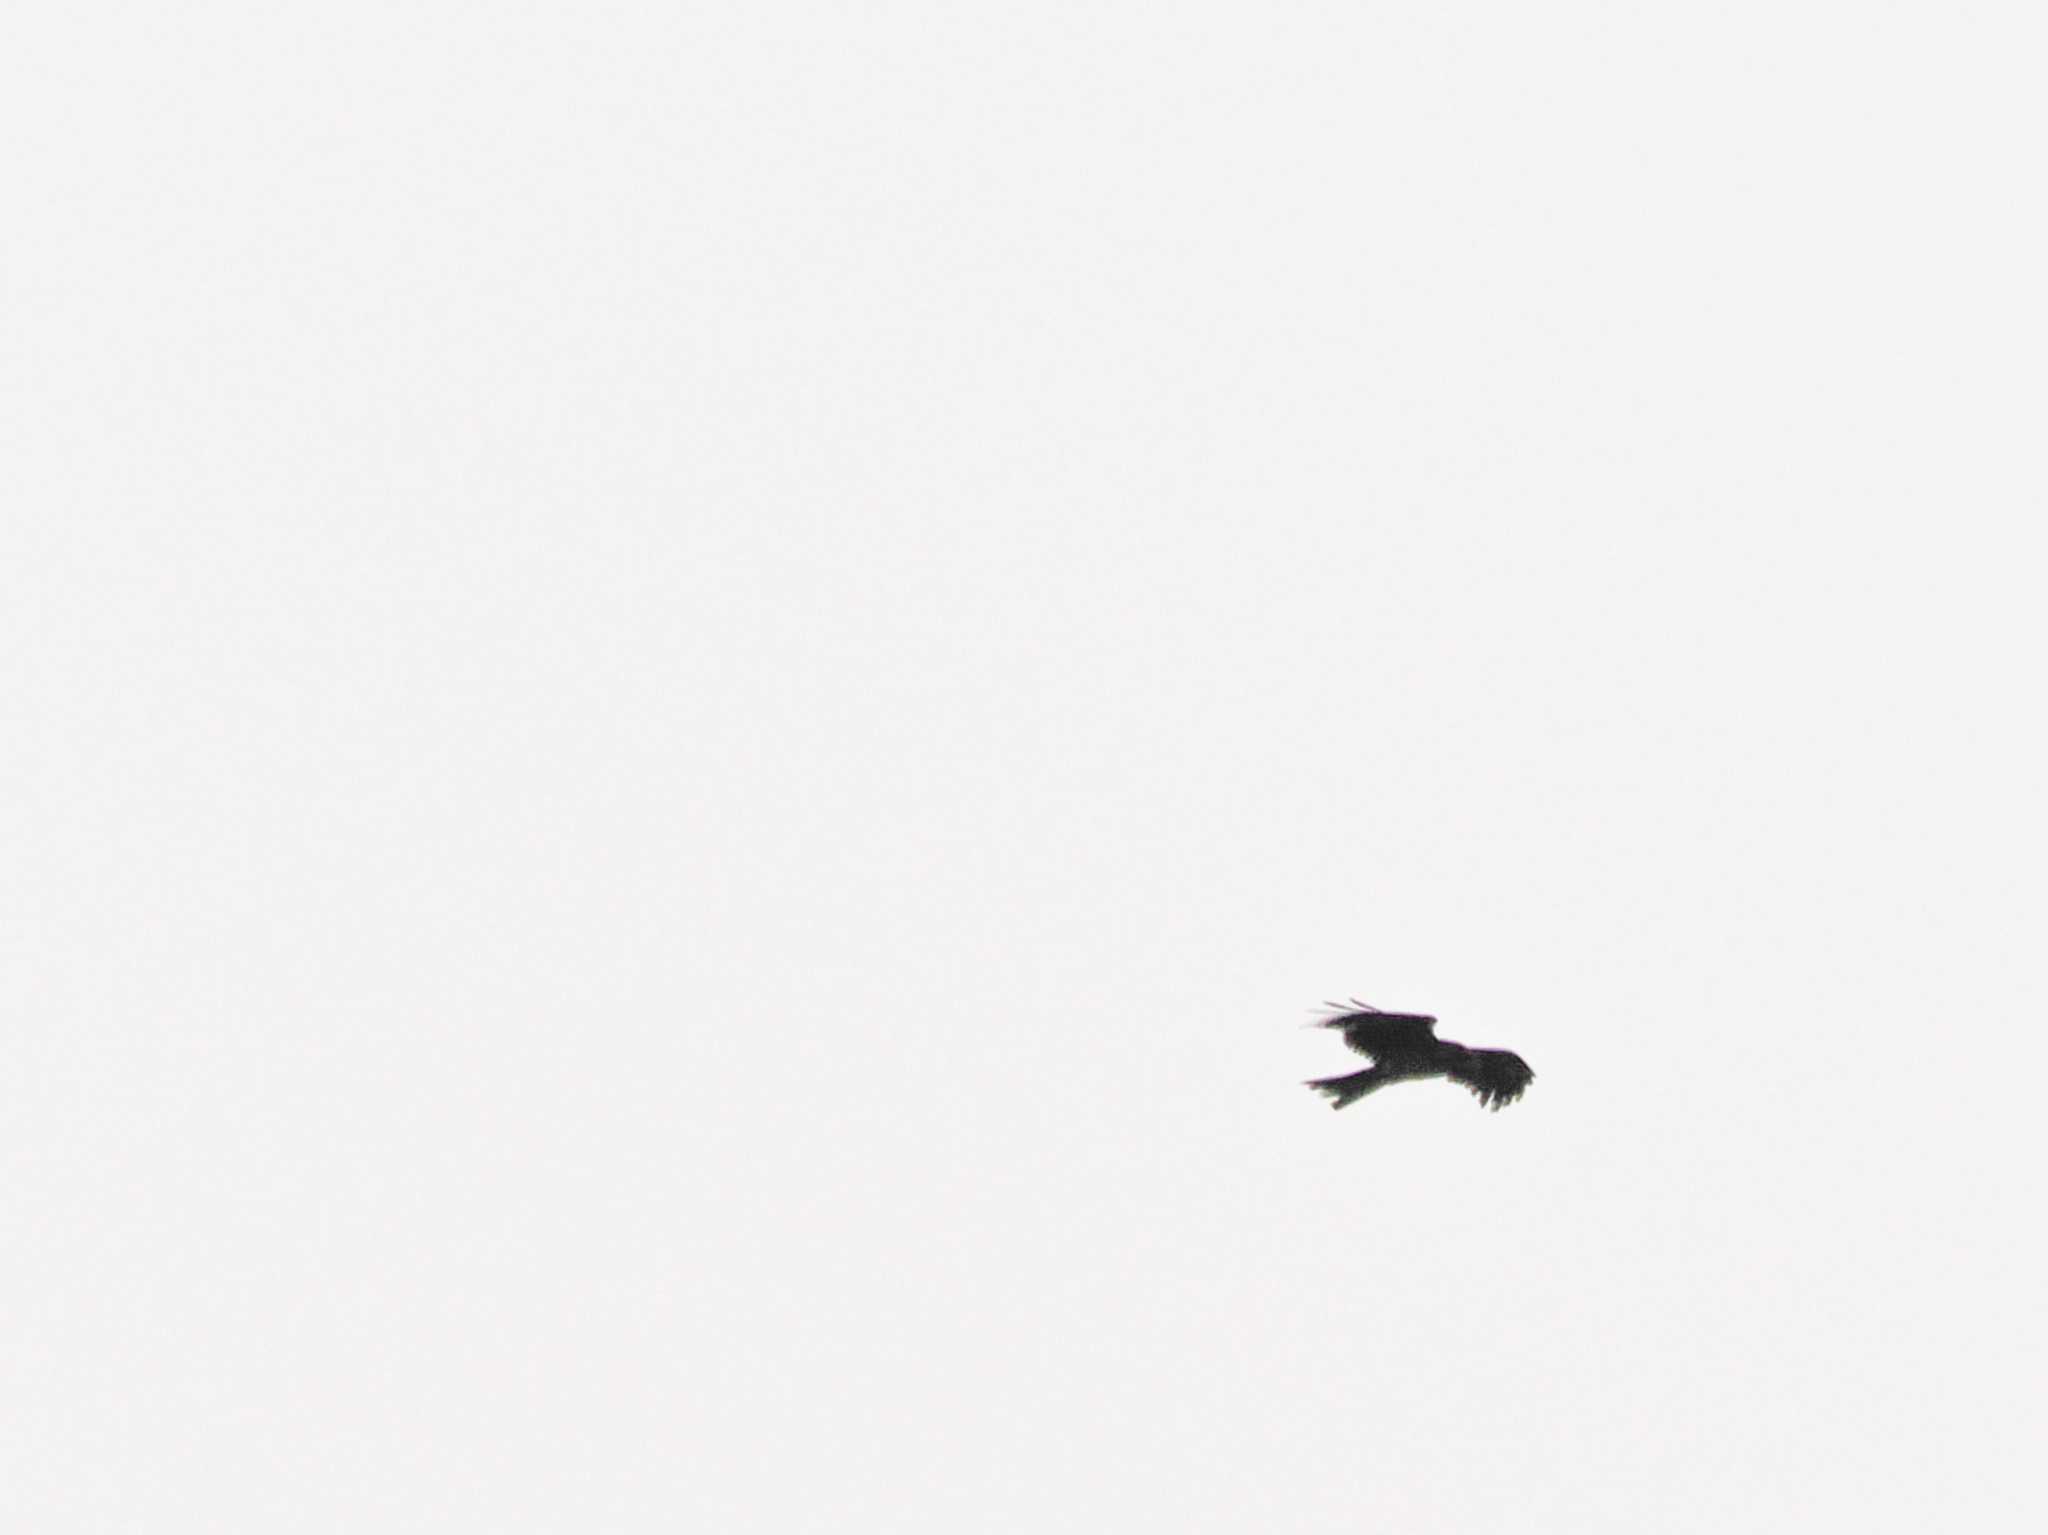 Photo of Black Kite at Hama-rikyu Gardens by 98_Ark (98ｱｰｸ)